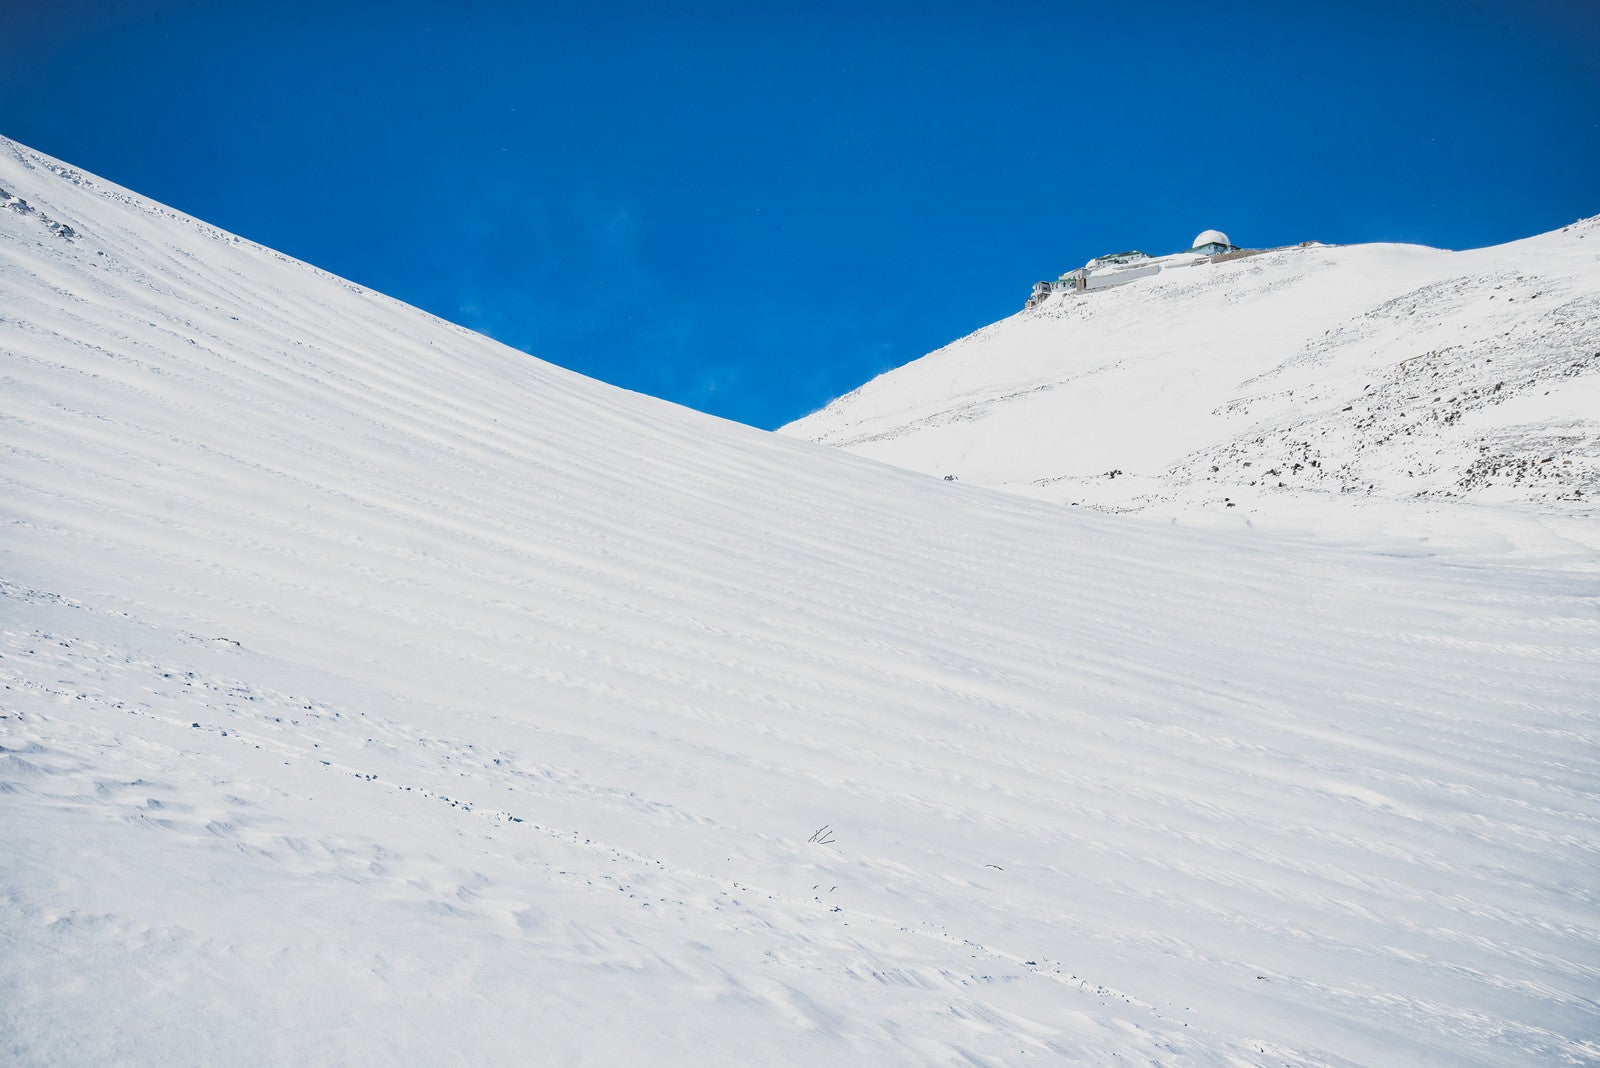 「摩利支天岳山頂のコロナ観測所」の写真